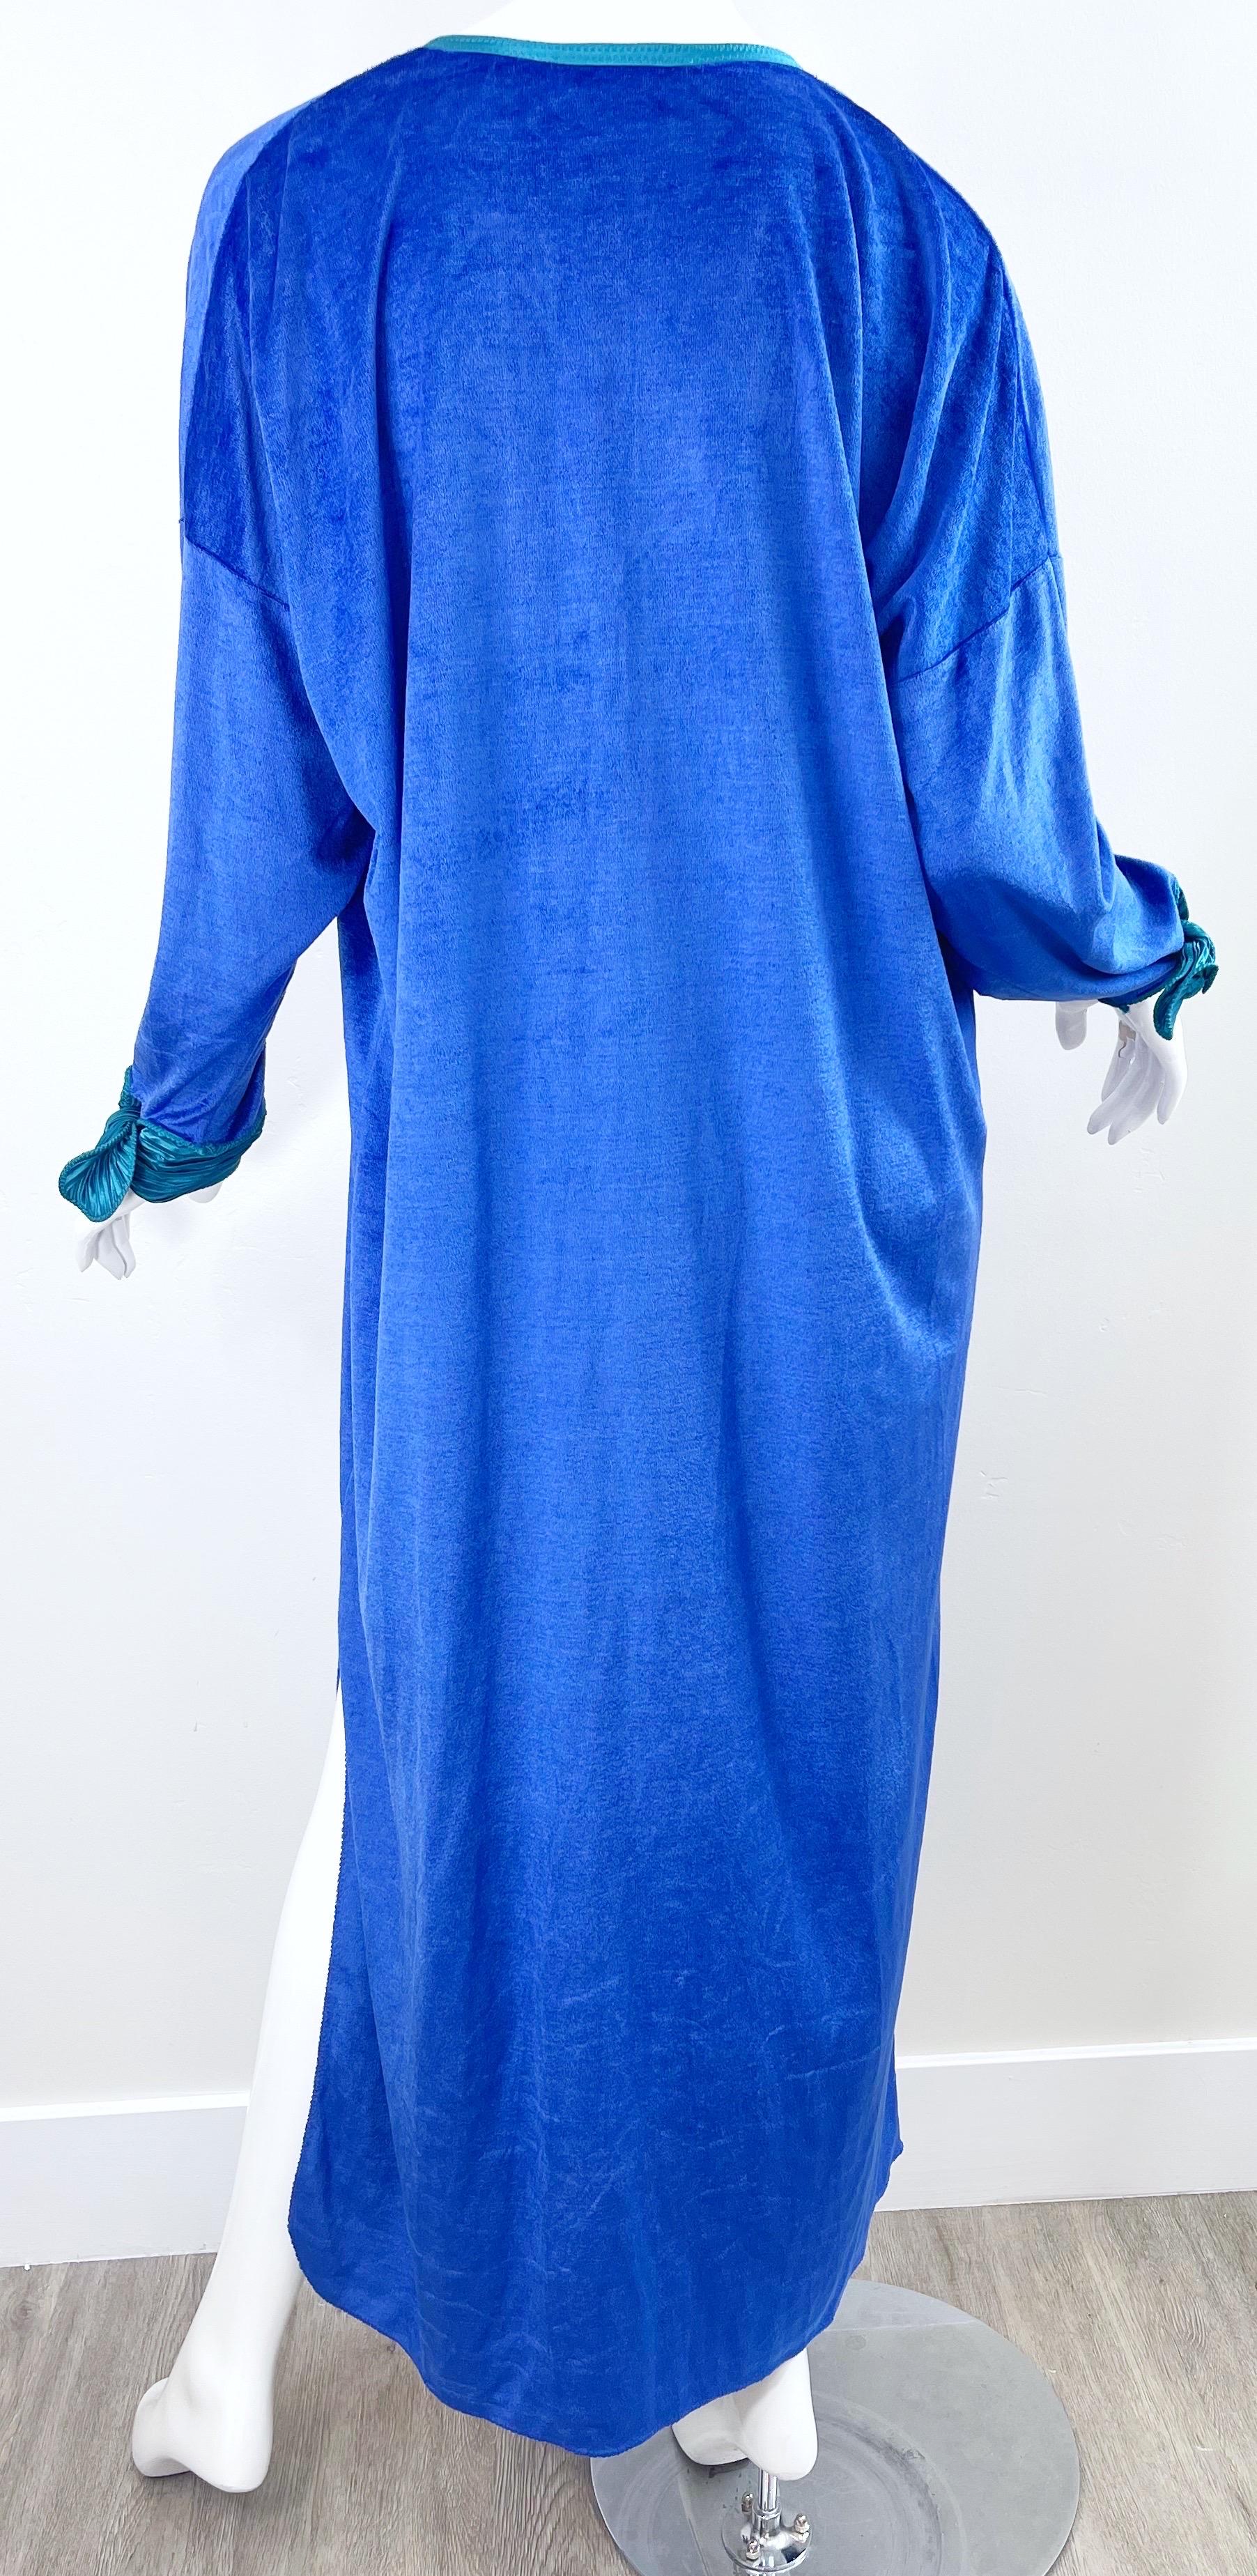 1980s Mary McFadden Royal Blue Teal Velour Vintage 80s Caftan Maxi Dress Kaftan For Sale 10